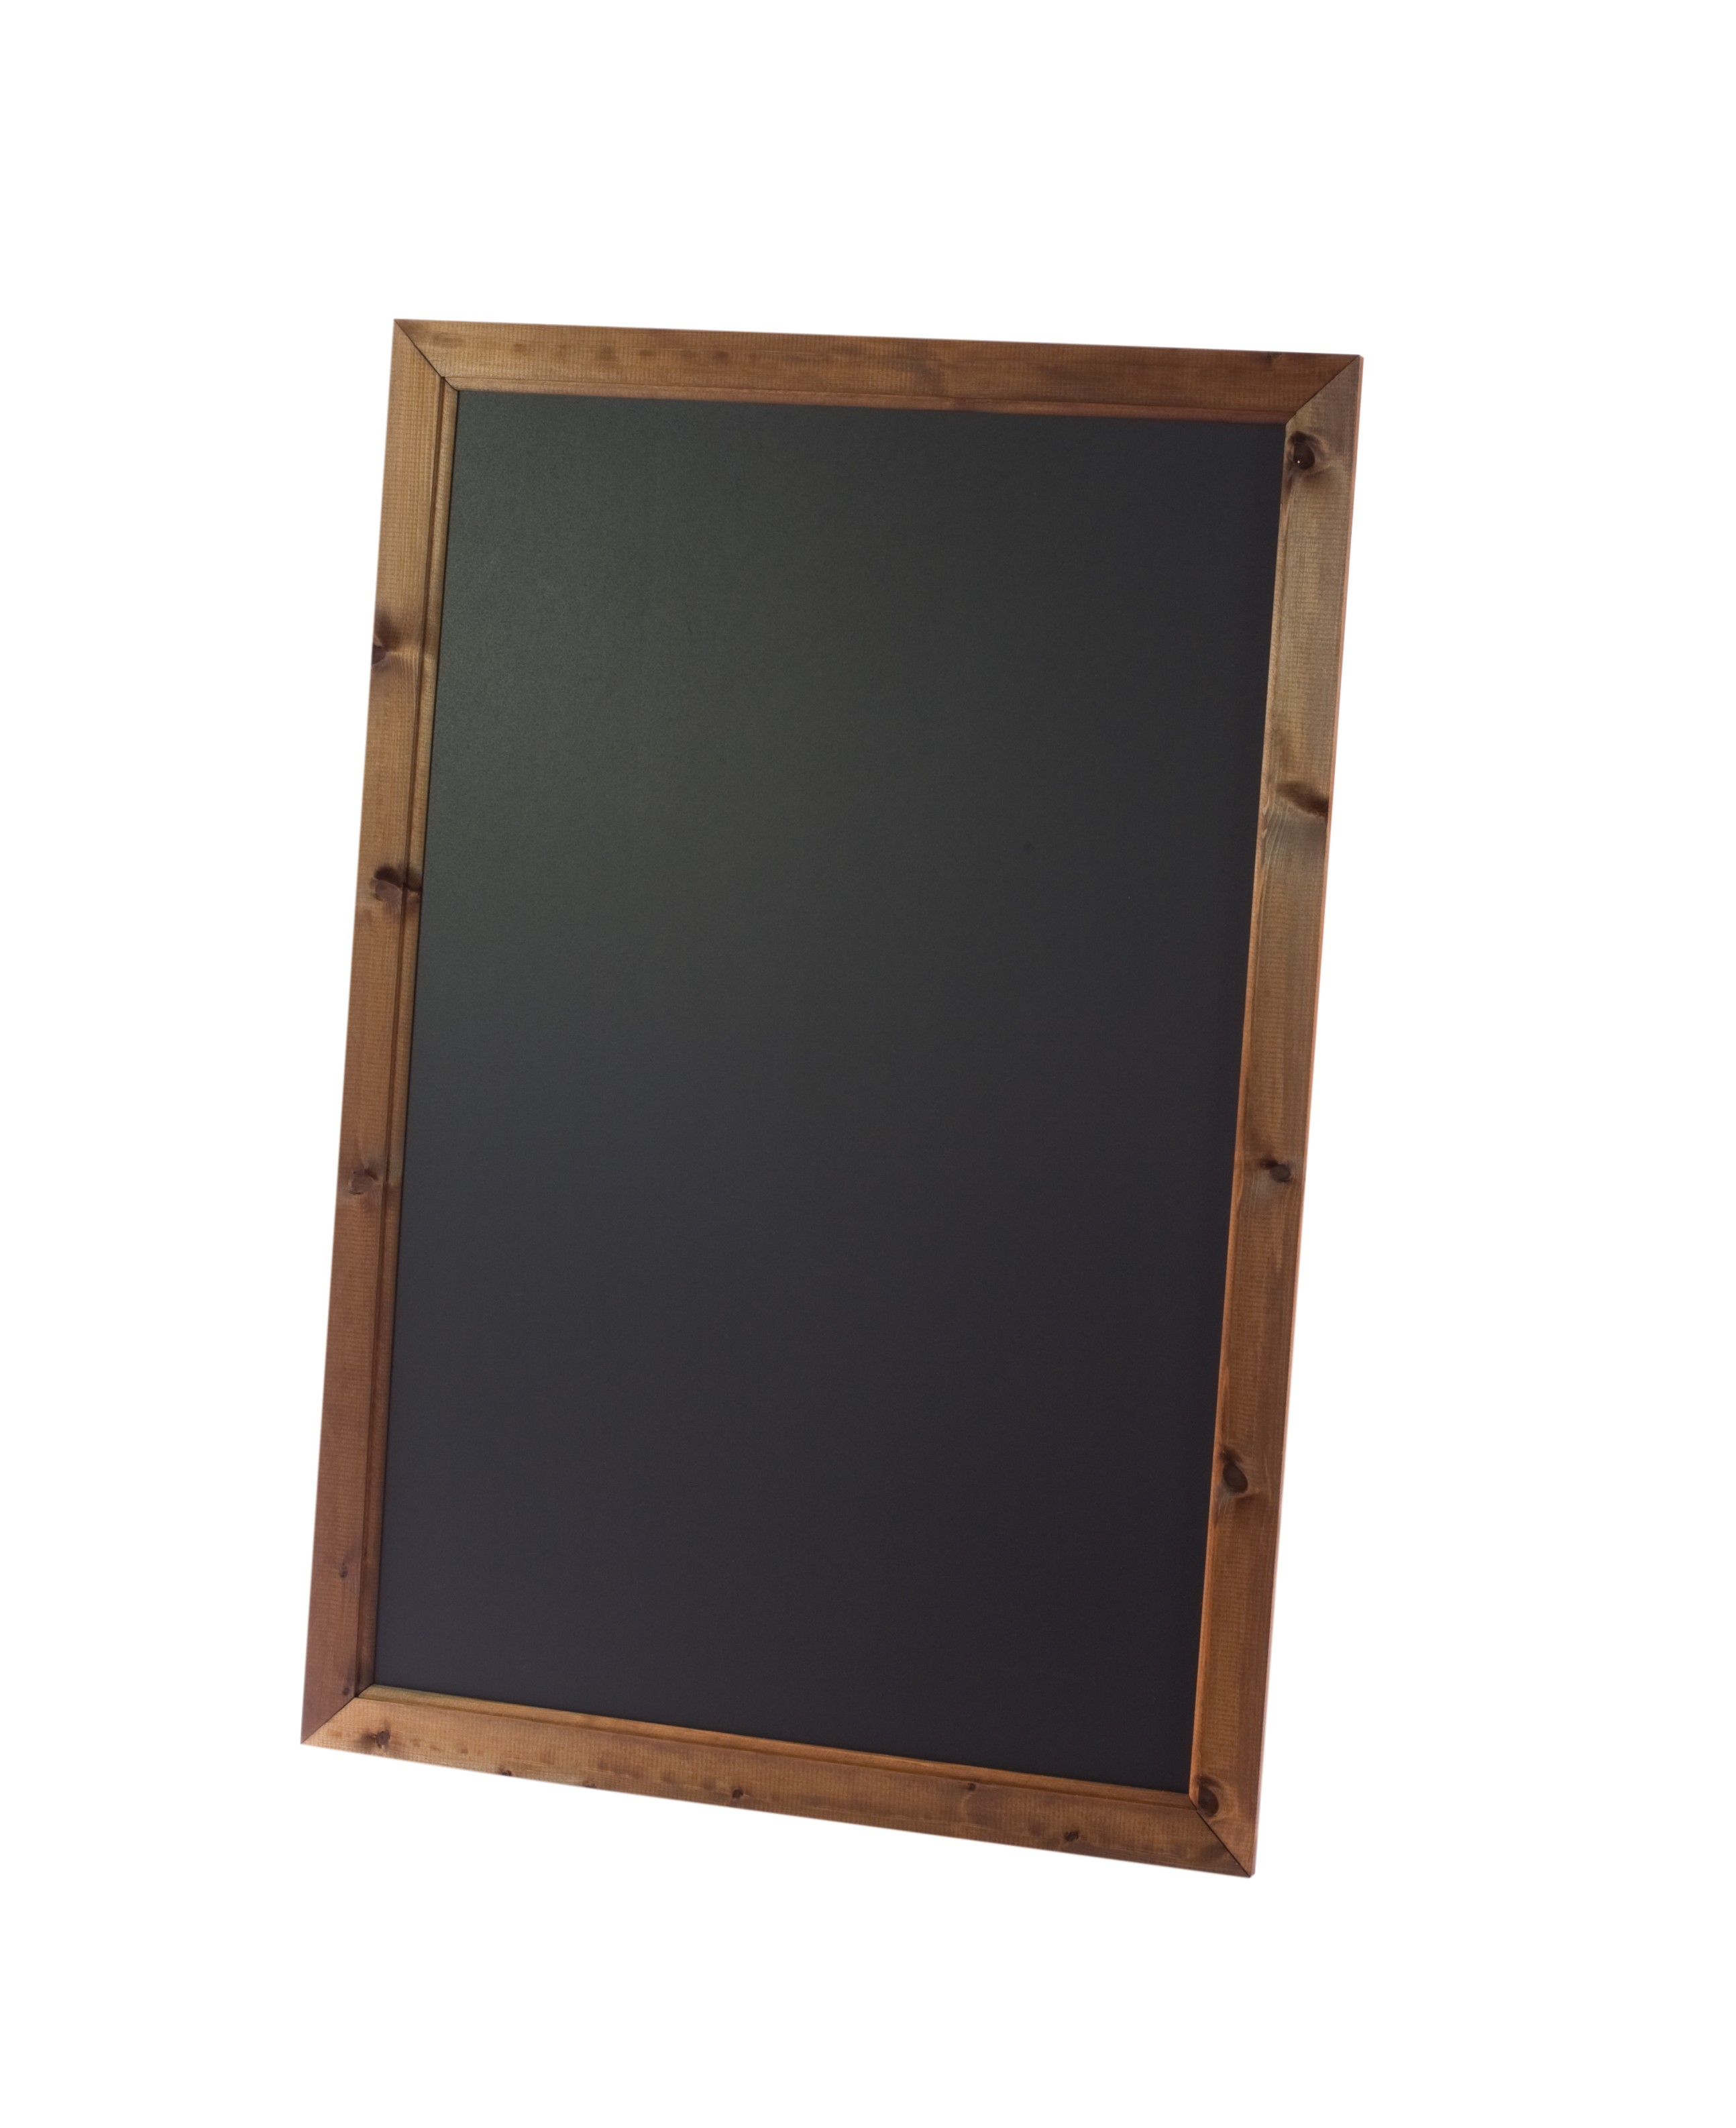 Oak Framed Wall Chalkboard 636mm x 486mm 